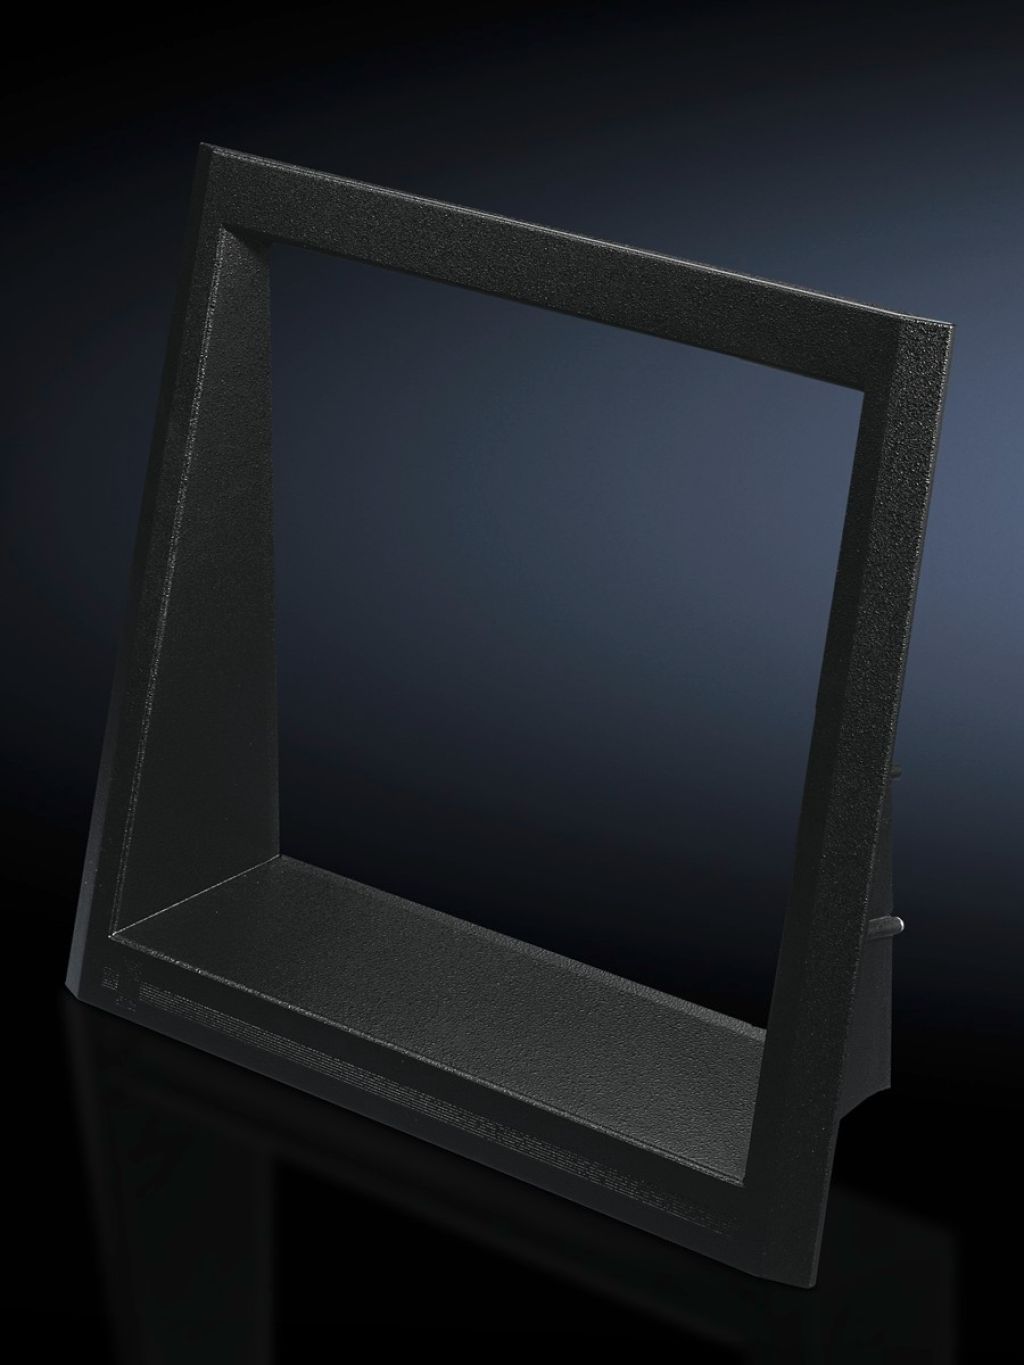 监视器框架 用于宽度为 600 和 800 mm 的门